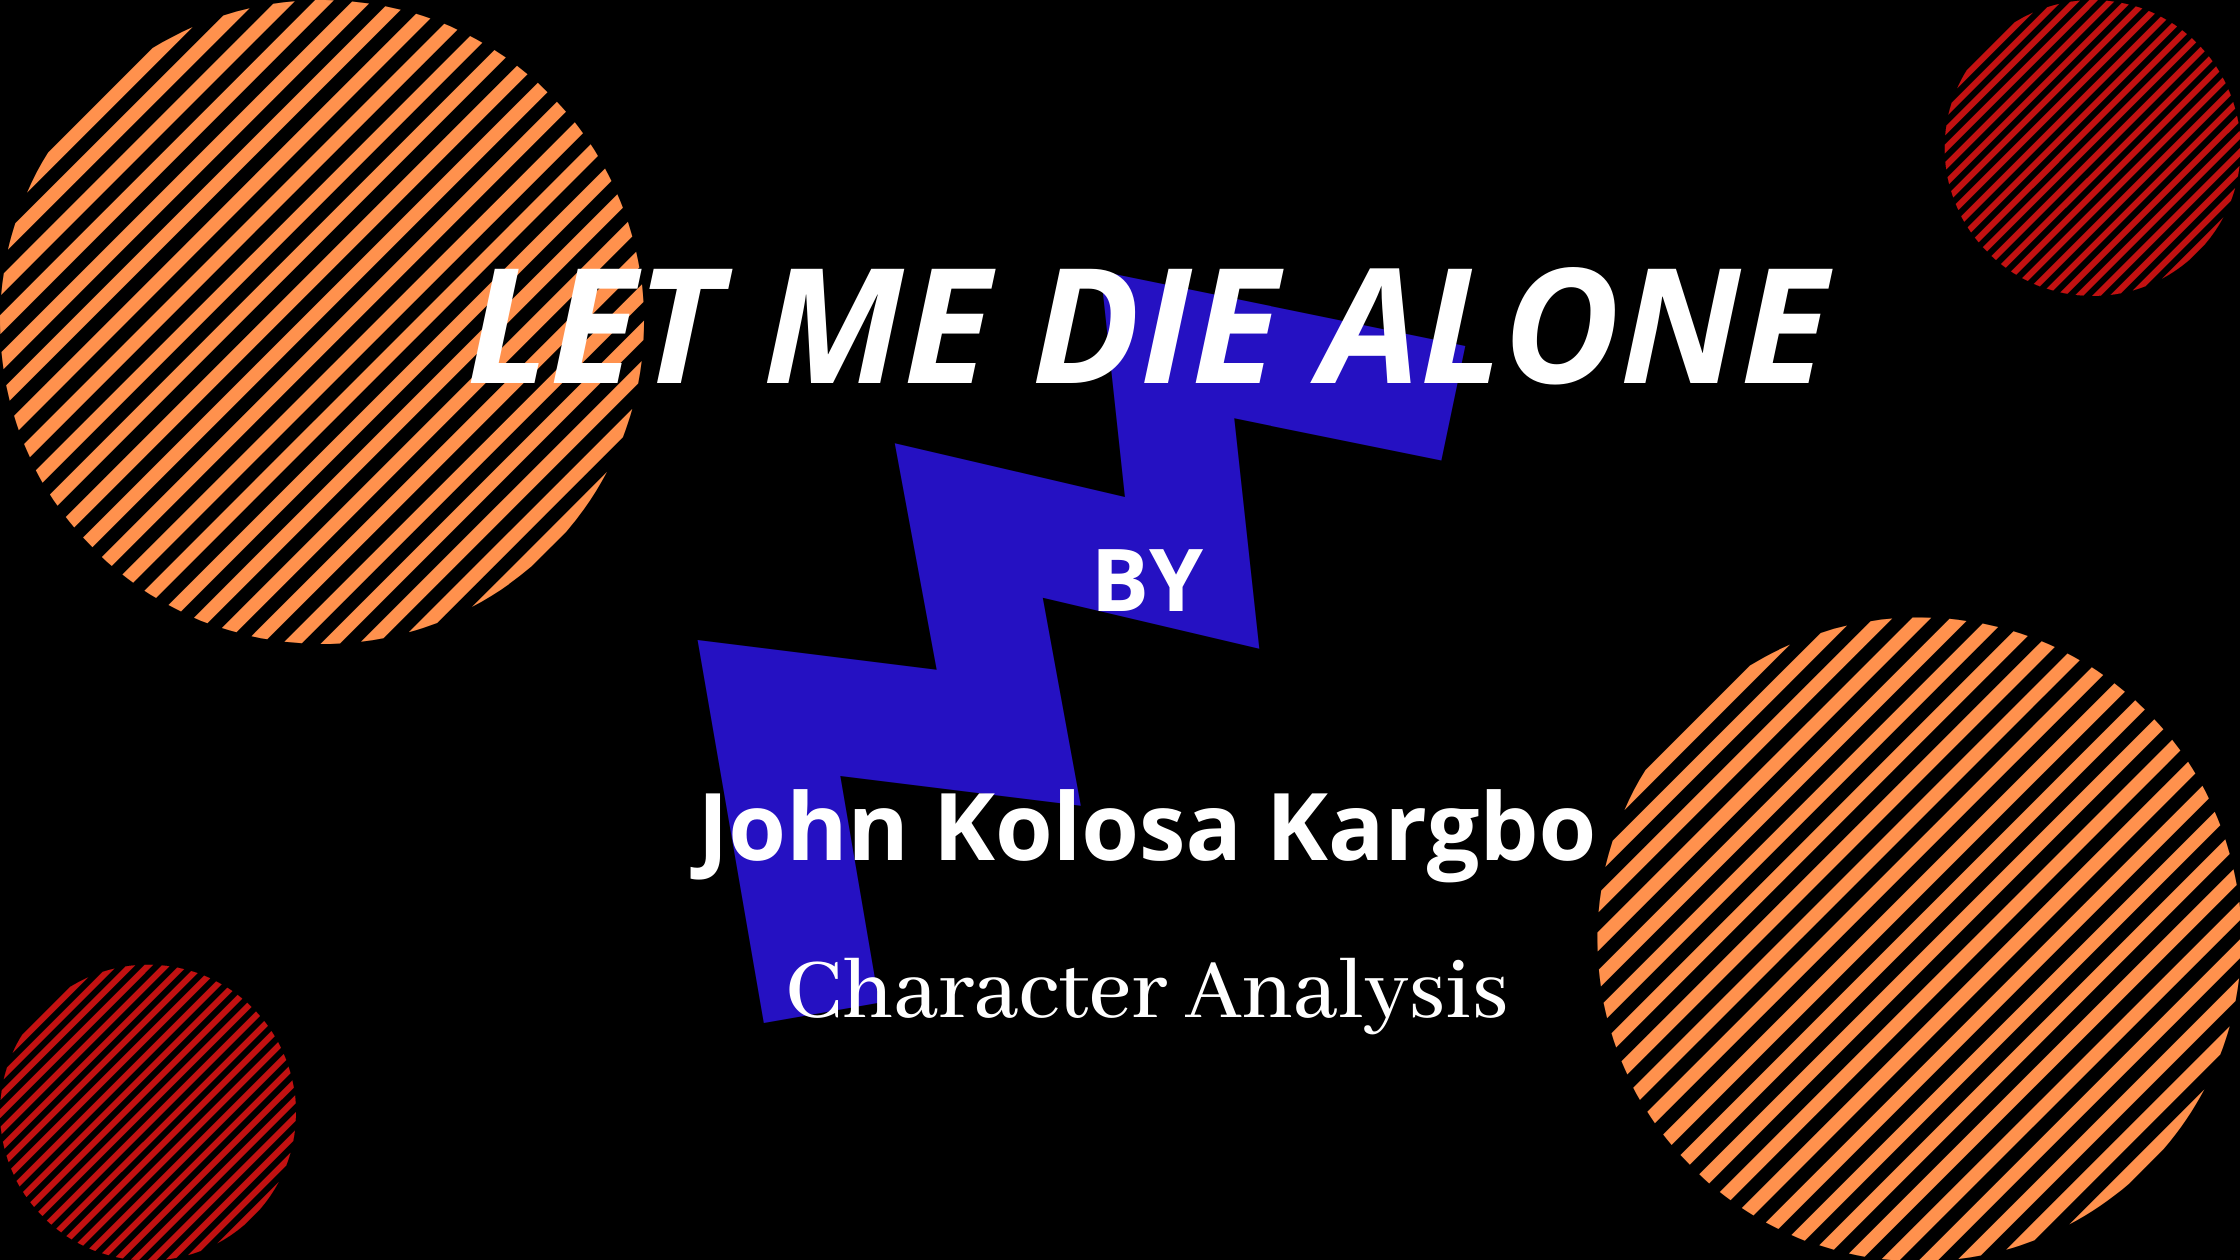 Characters in LET ME DIE ALONE by John Kolosa Kargbo